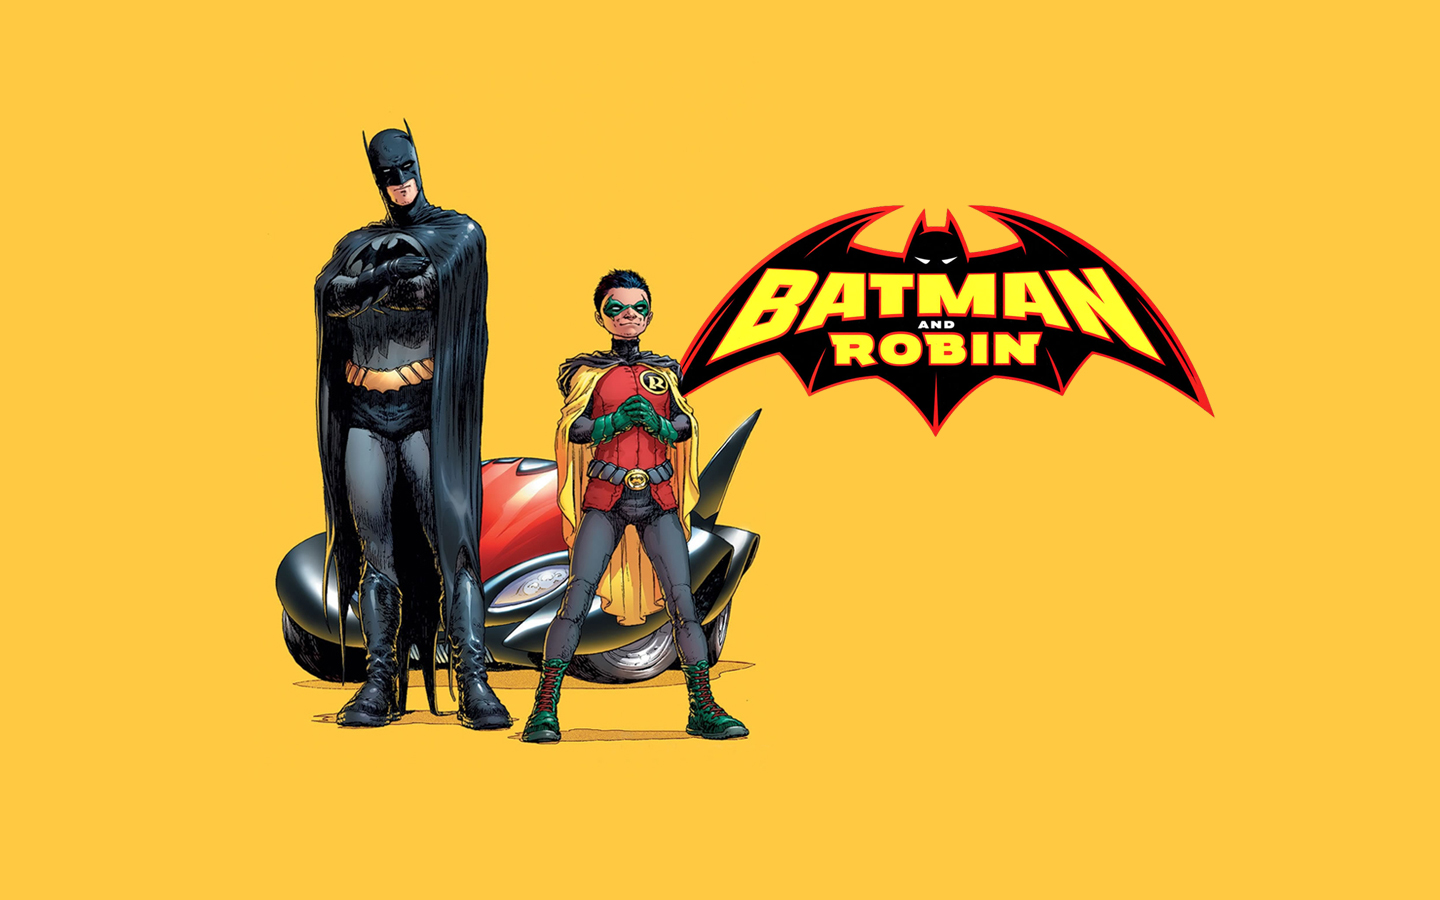 fond d'écran batman et robin,homme chauve souris,super héros,personnage fictif,dessin animé,ligue de justice